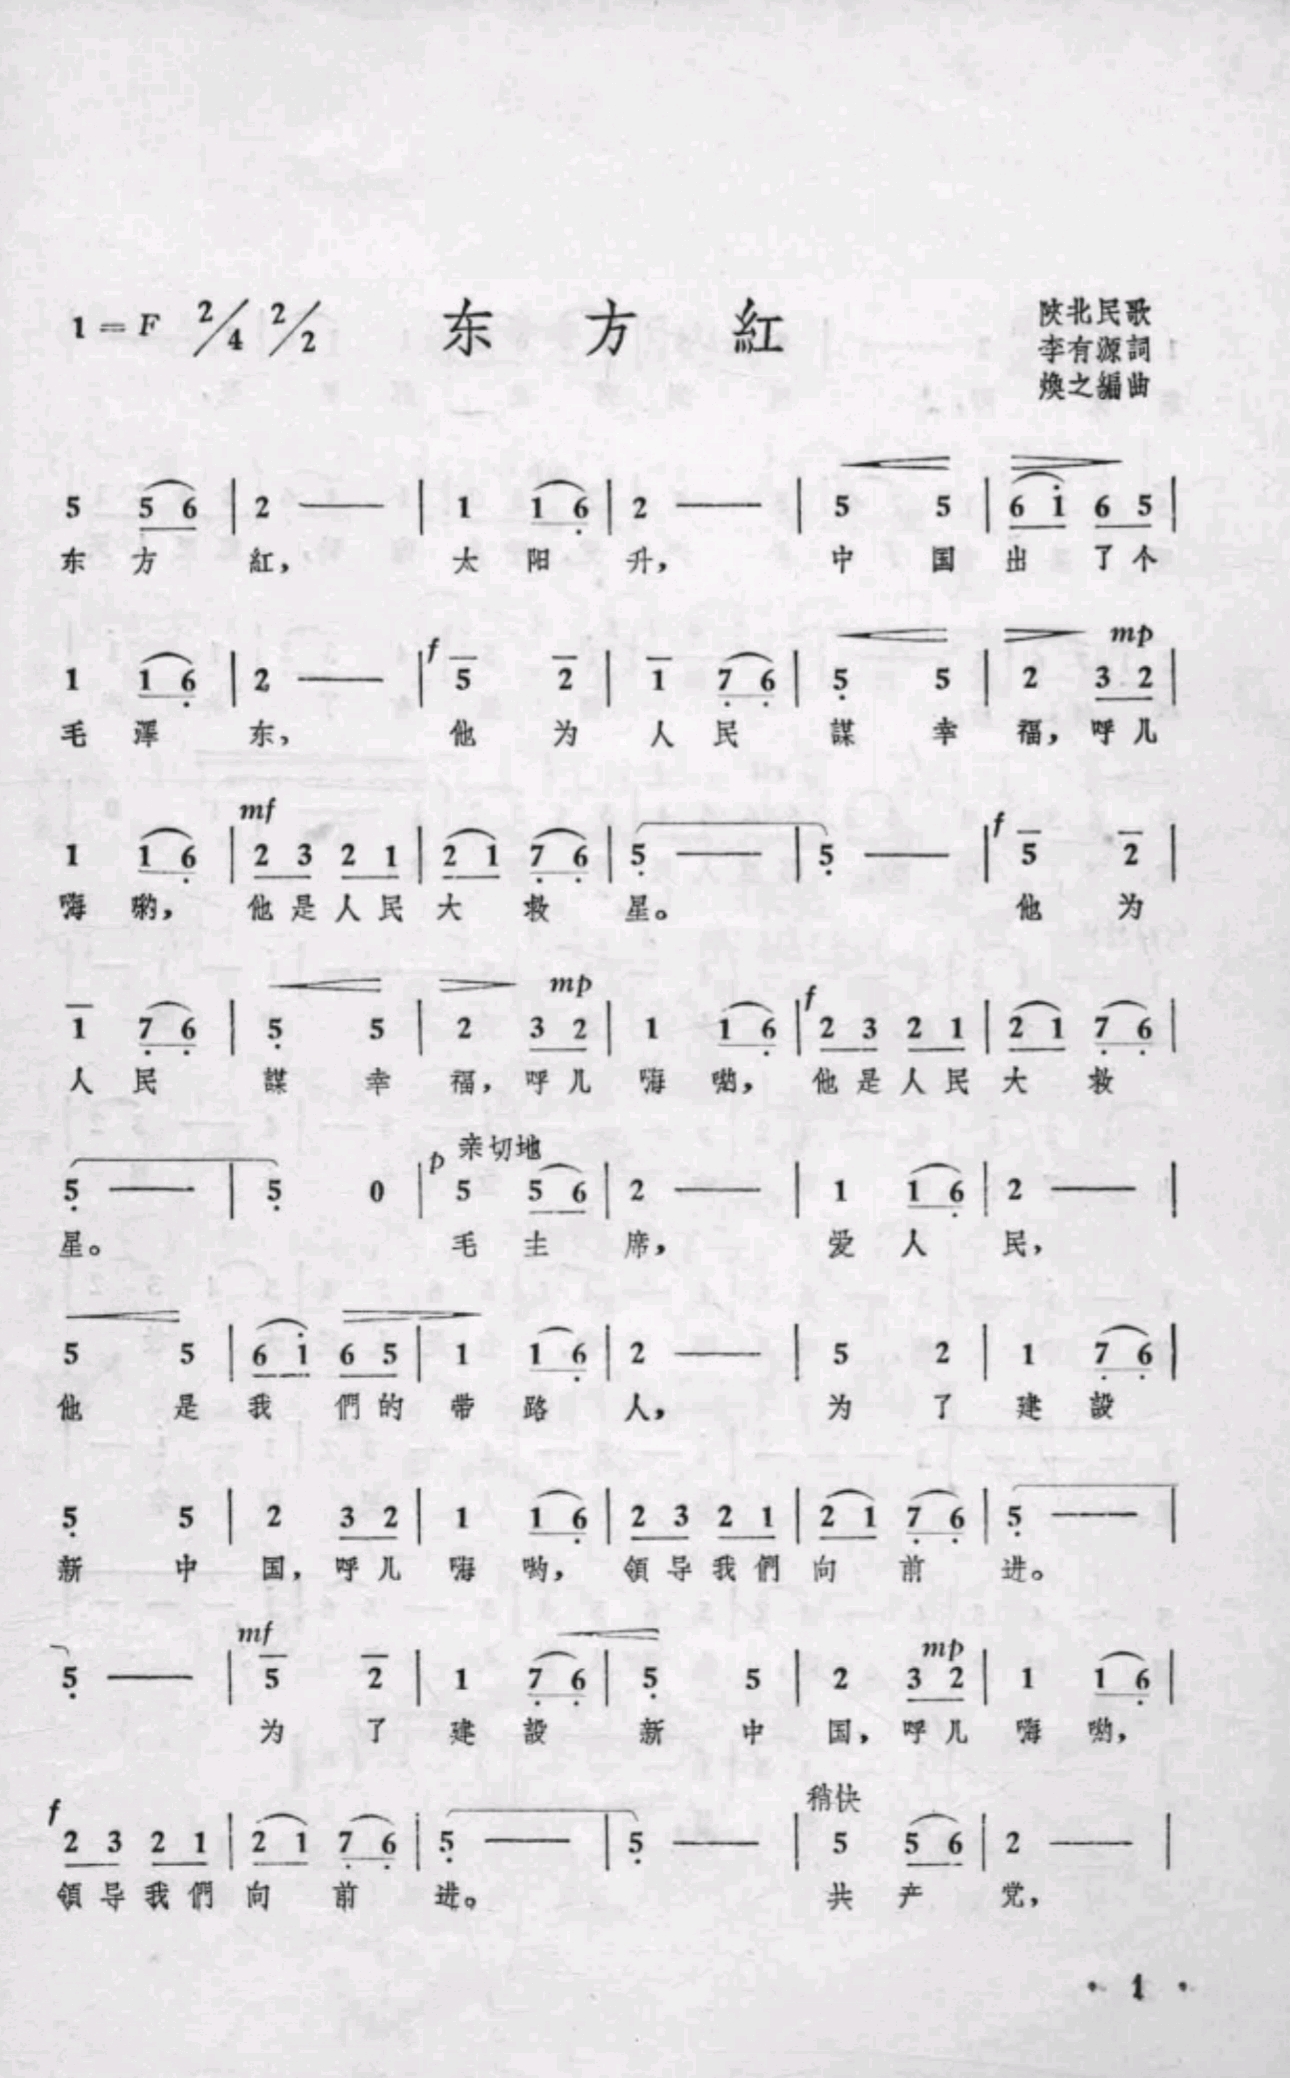 《东方红变奏曲 钢琴独奏曲》             出版日期:1953.